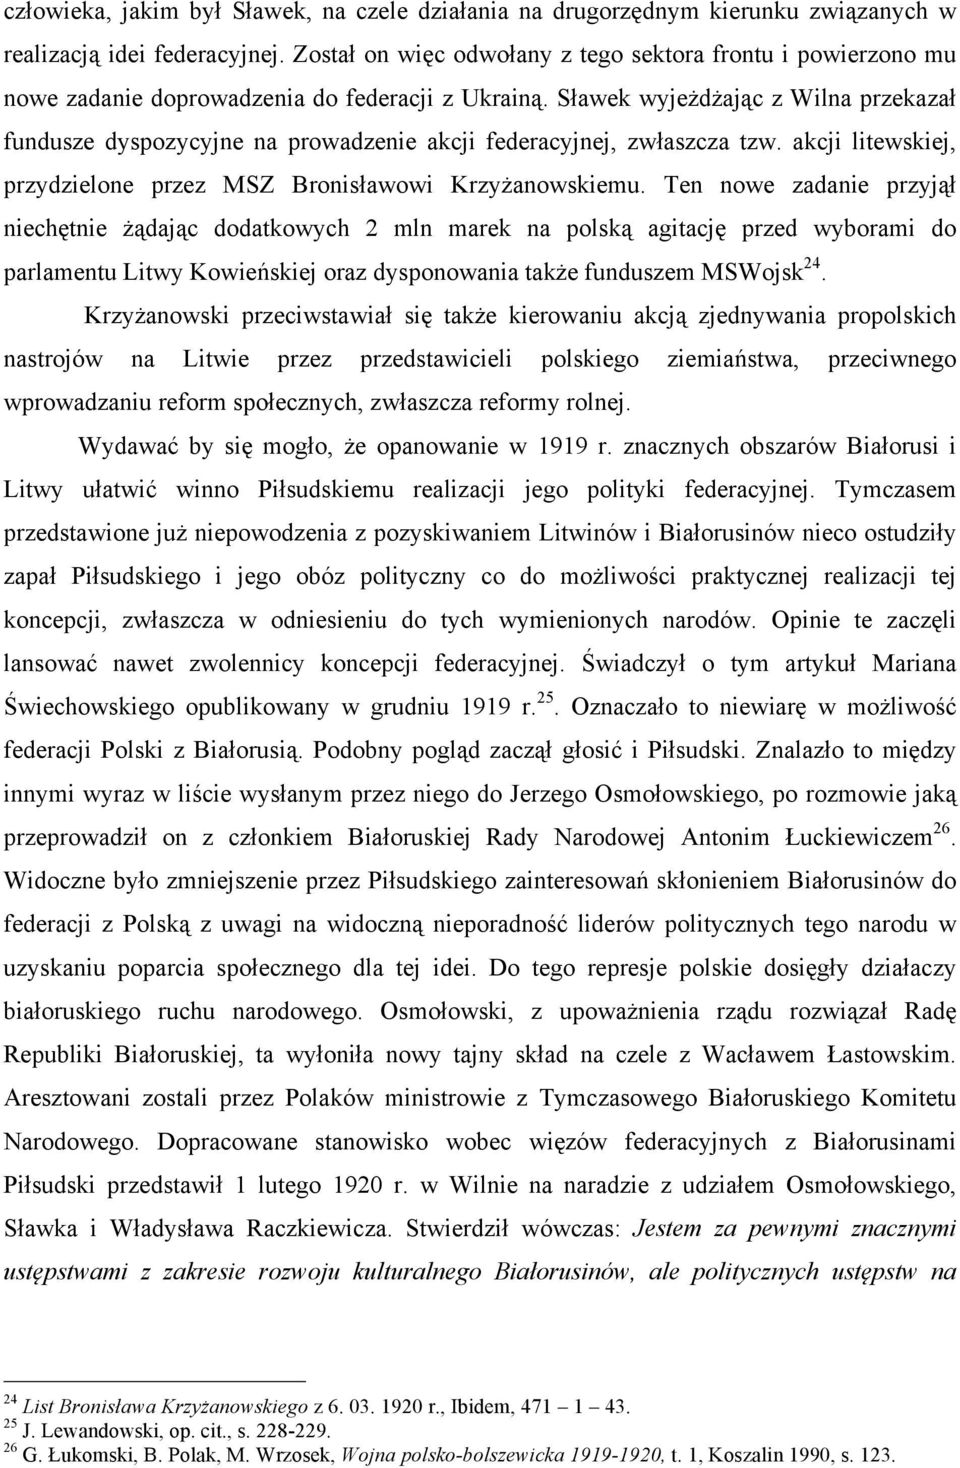 Sławek wyjeżdżając z Wilna przekazał fundusze dyspozycyjne na prowadzenie akcji federacyjnej, zwłaszcza tzw. akcji litewskiej, przydzielone przez MSZ Bronisławowi Krzyżanowskiemu.